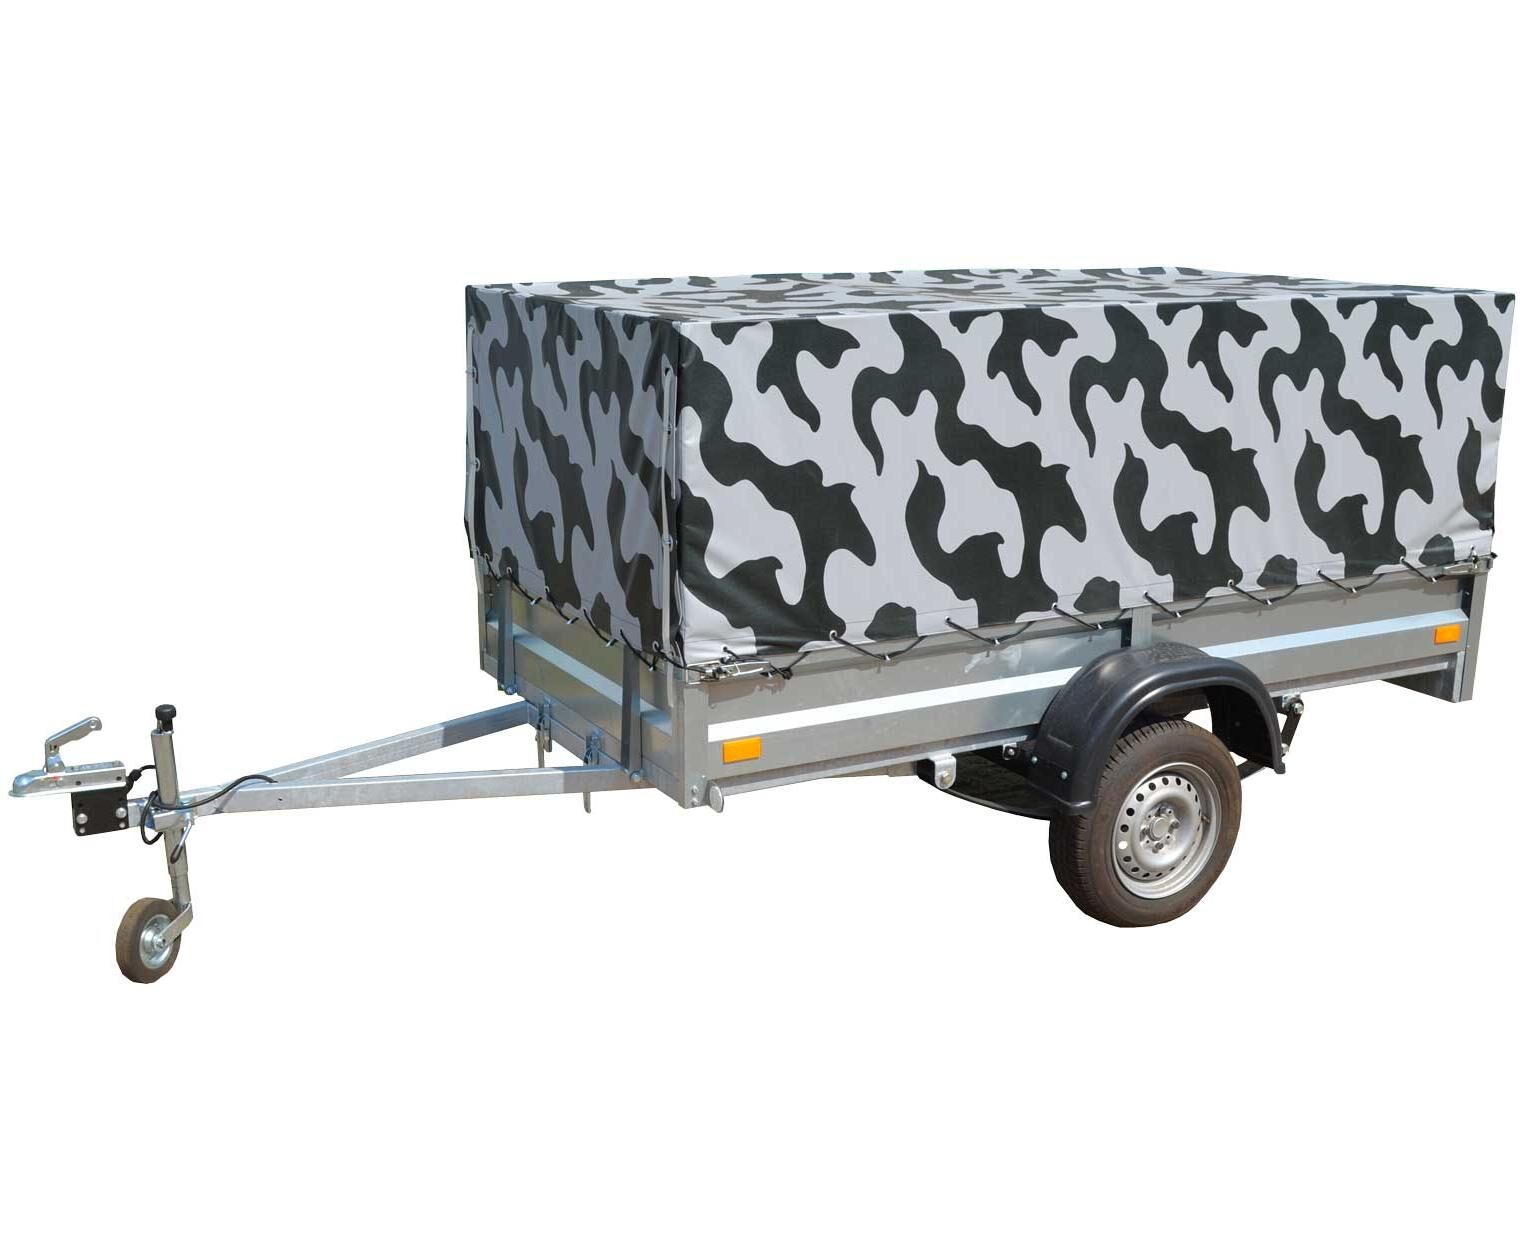 Прицеп KOiRA УПЛК 012019 - универсальный грузовой прицеп общего назначения. Внутренние размеры кузов